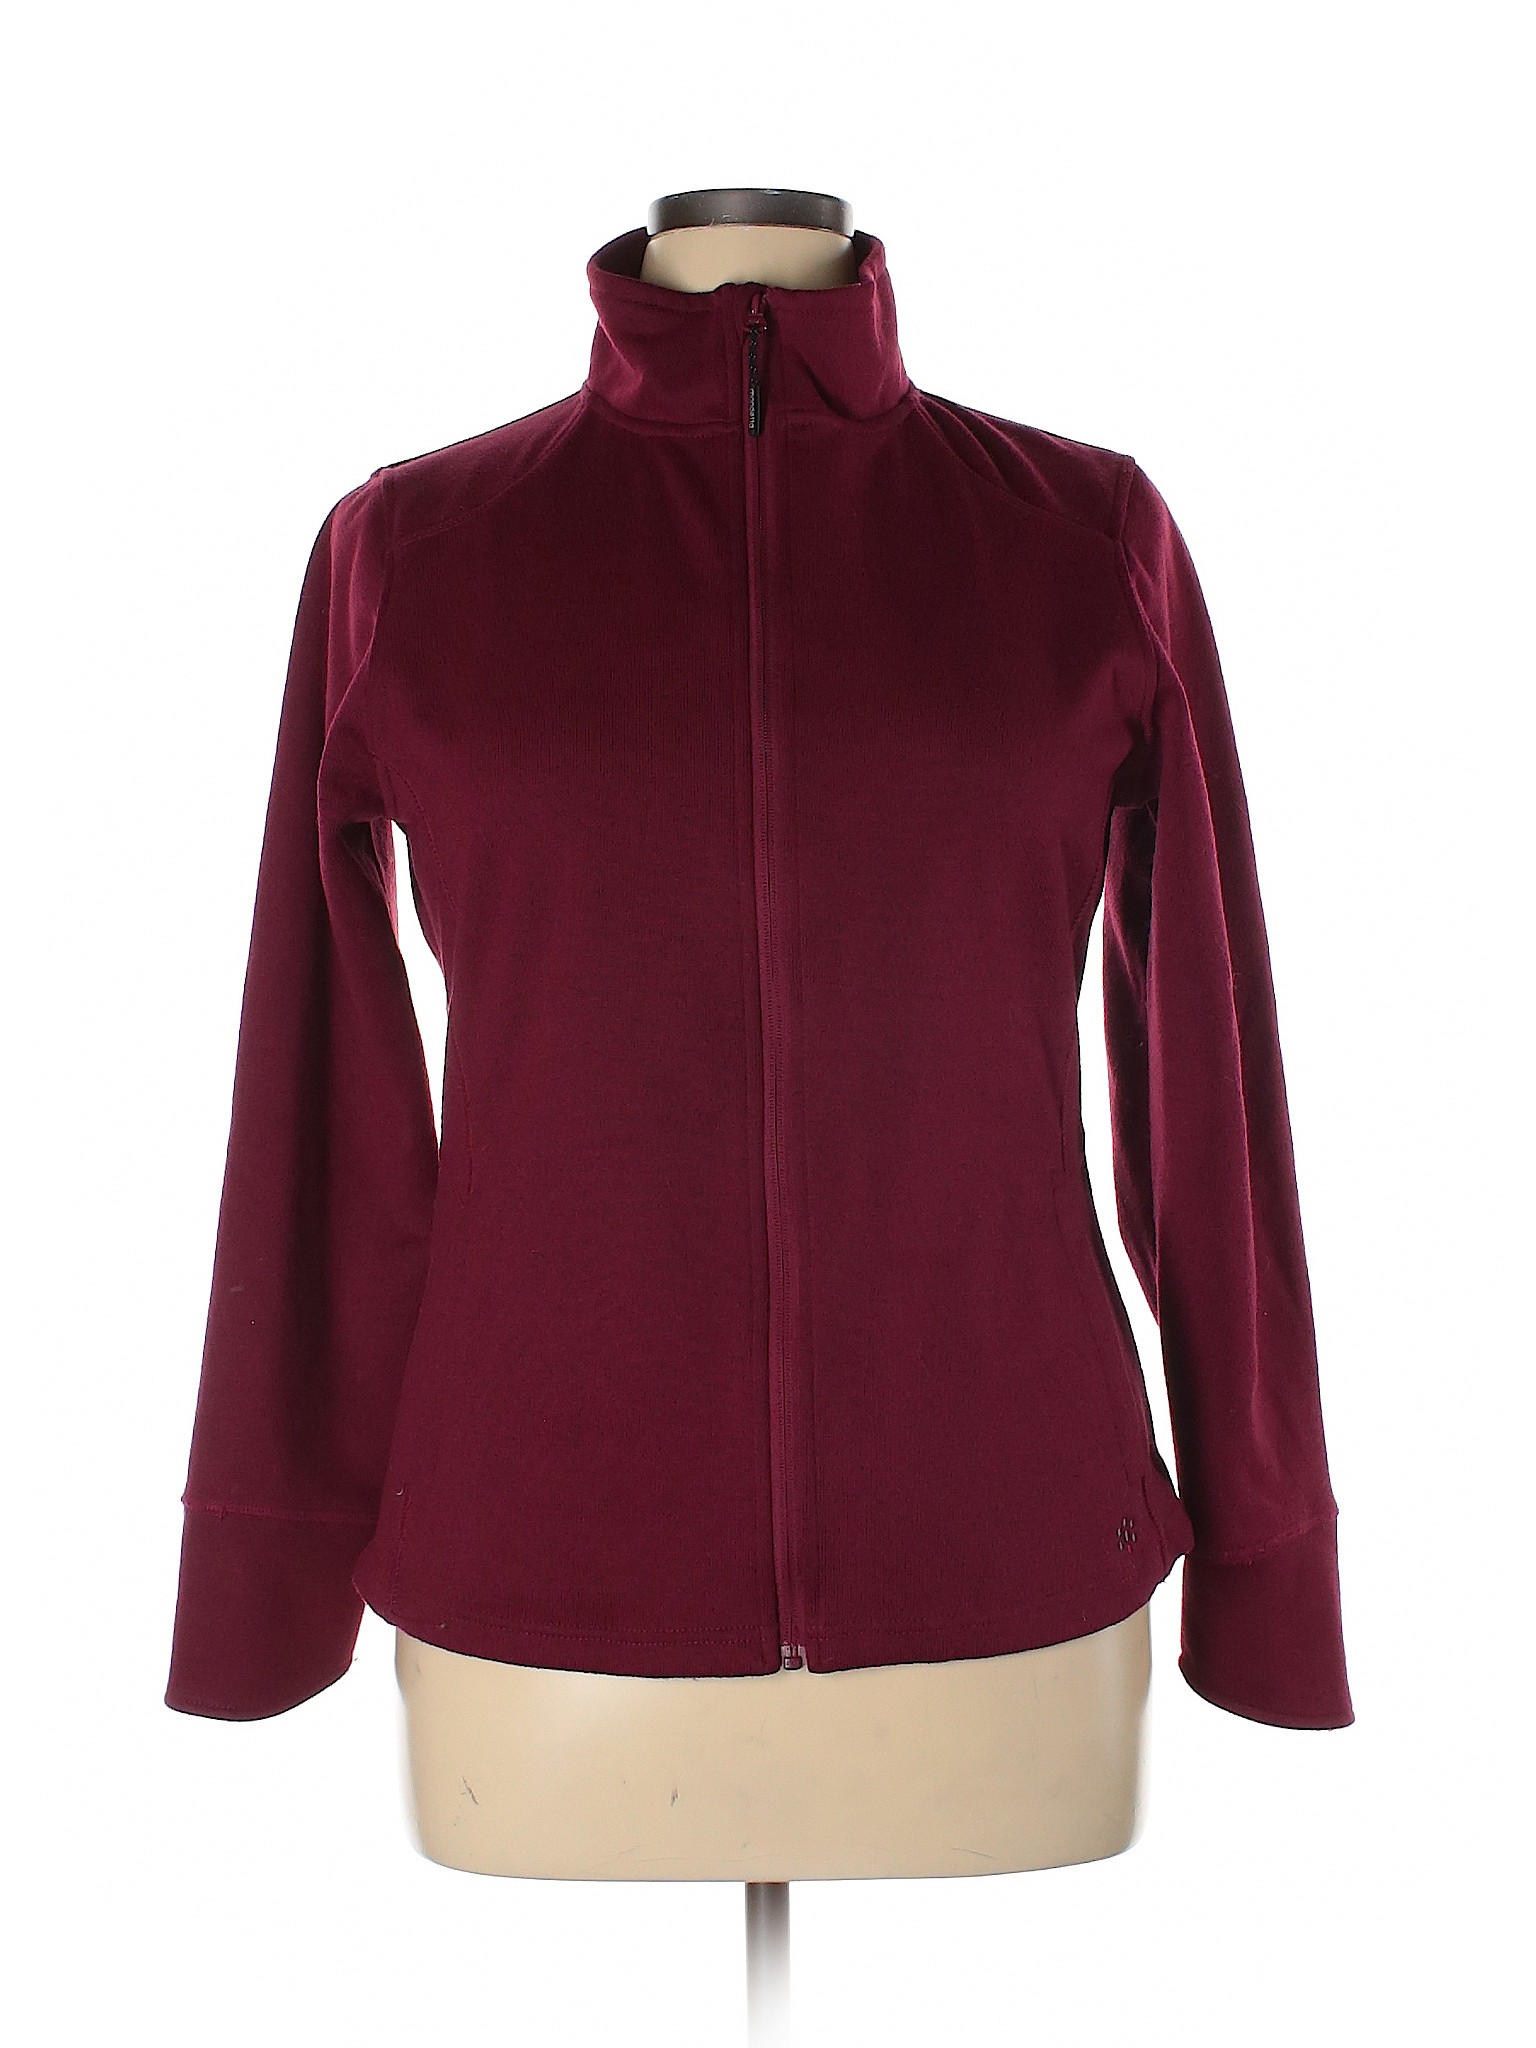 Mondetta Women Red Jacket XL | eBay